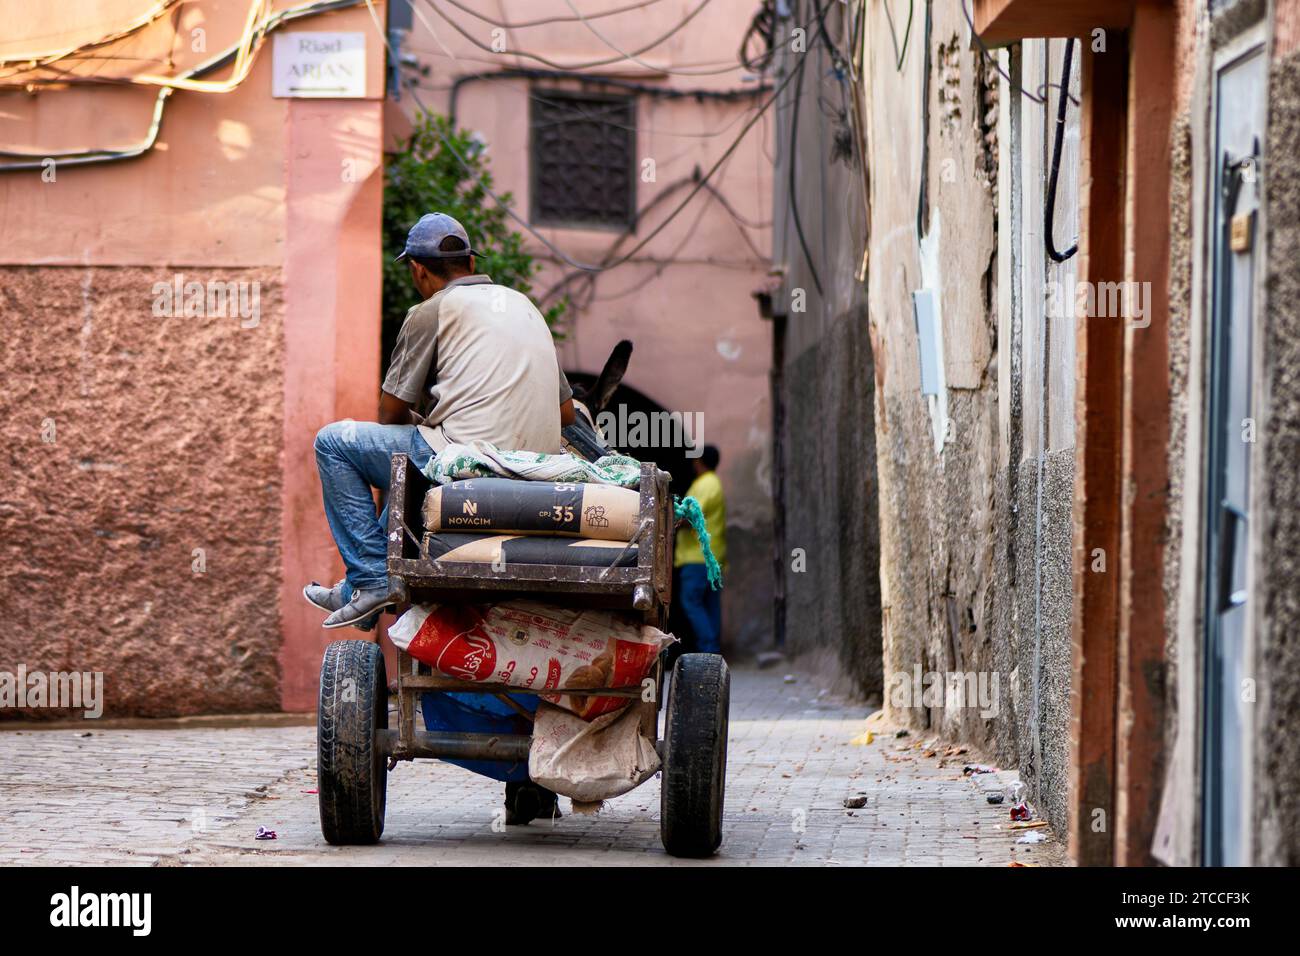 Marrakech, Maroc : un homme marocain transporte des sacs de béton sur un chariot à deux roues tiré par un âne à l'intérieur d'une rue de la Médina de Marrakech. Banque D'Images